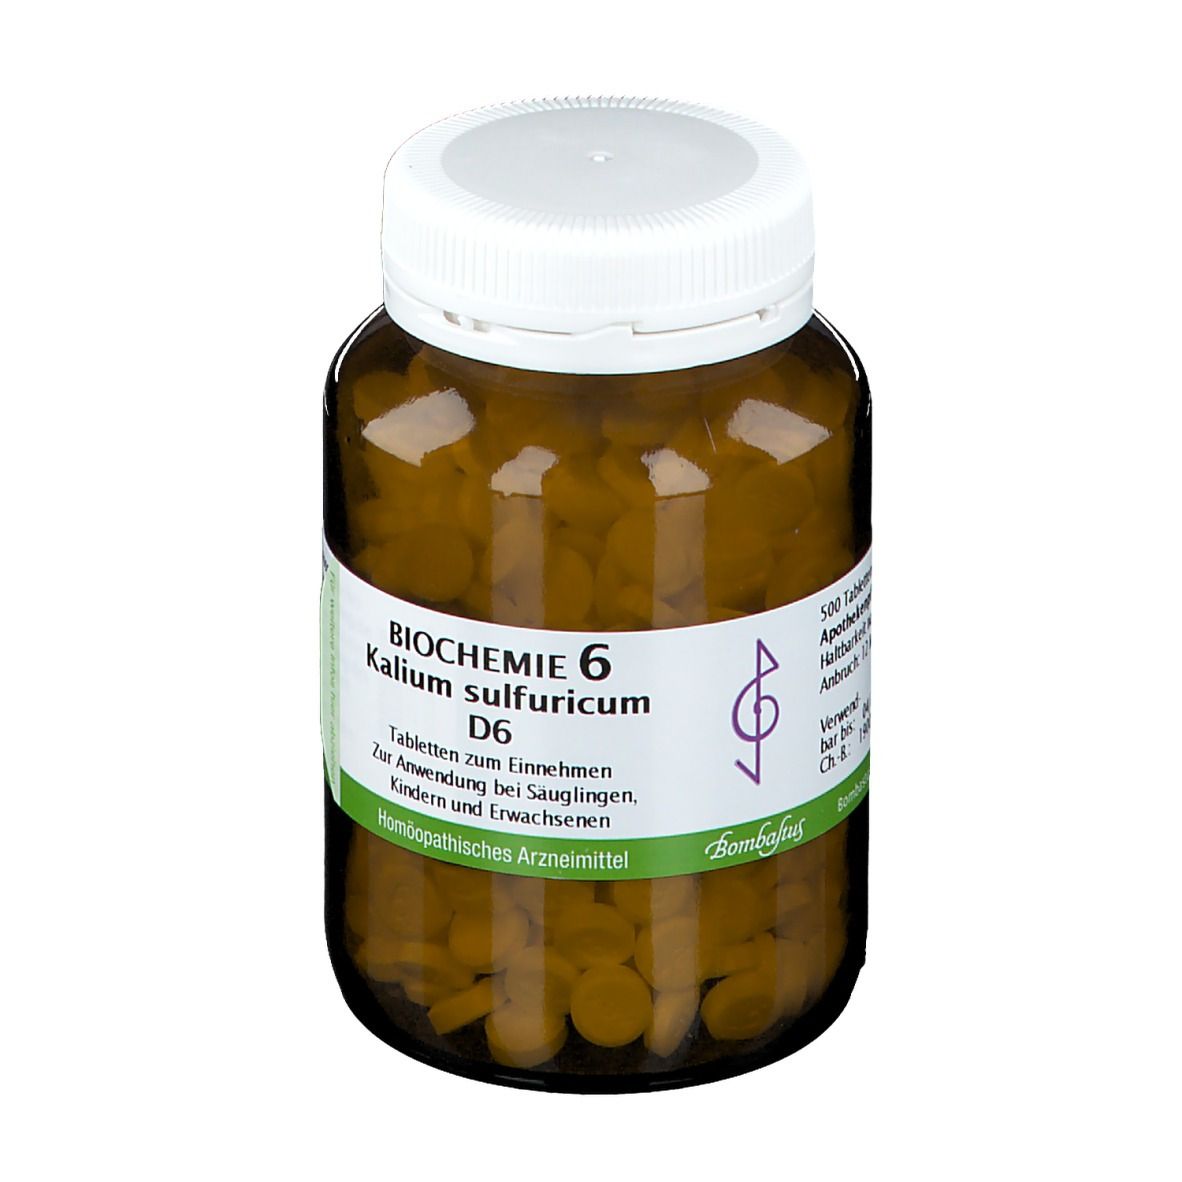 Bombastus Biochemie 6 Kalium sulfuricum D 6 Tabletten